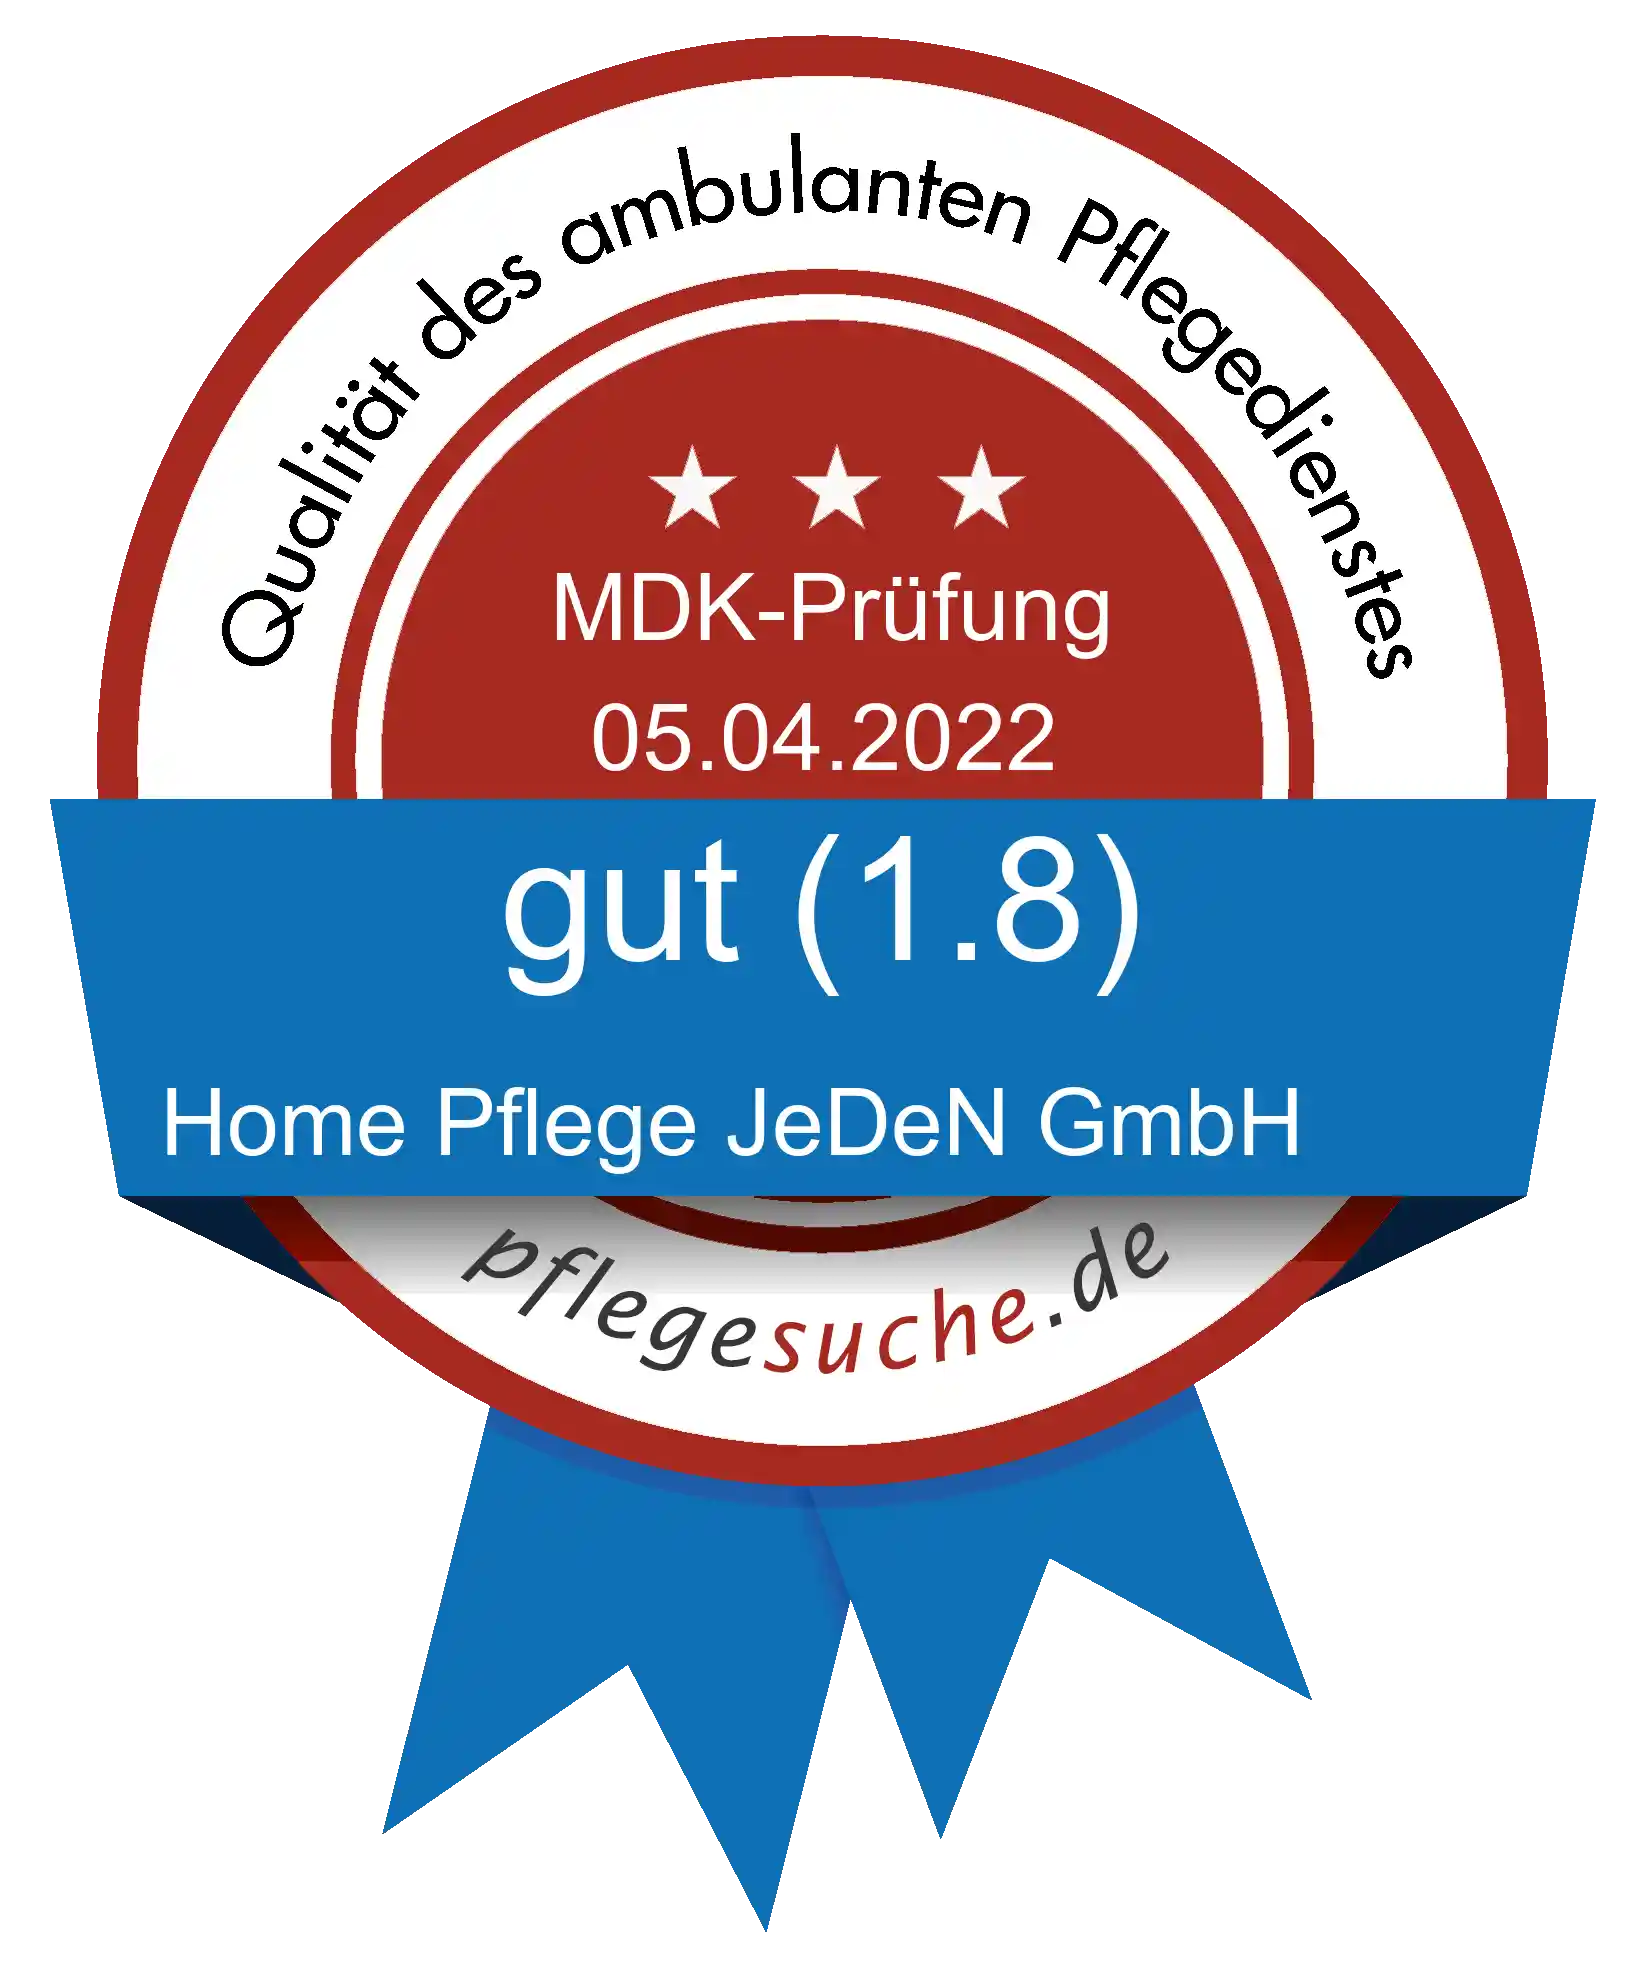 Siegel Benotung: Home Pflege JeDeN GmbH